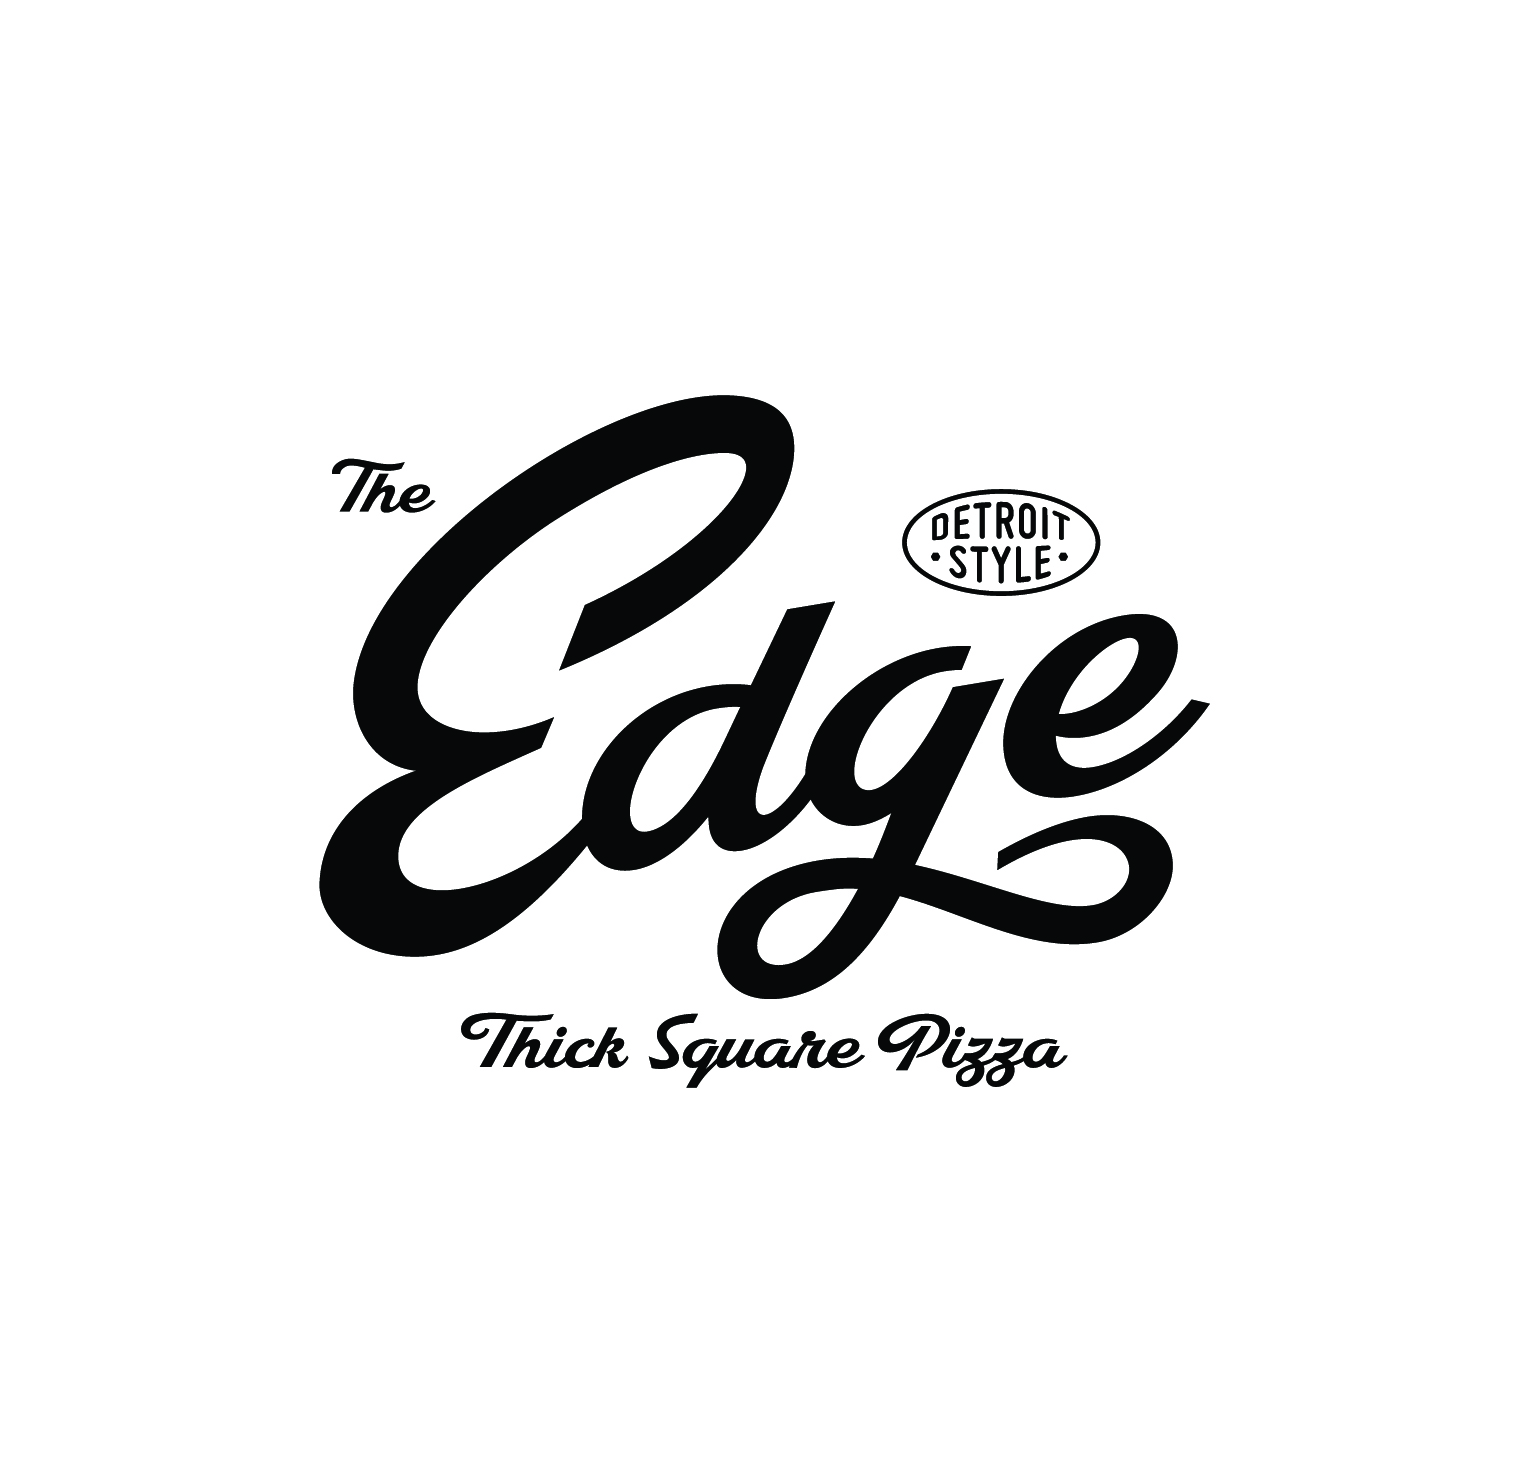 The Edge Thick Square Pizza 